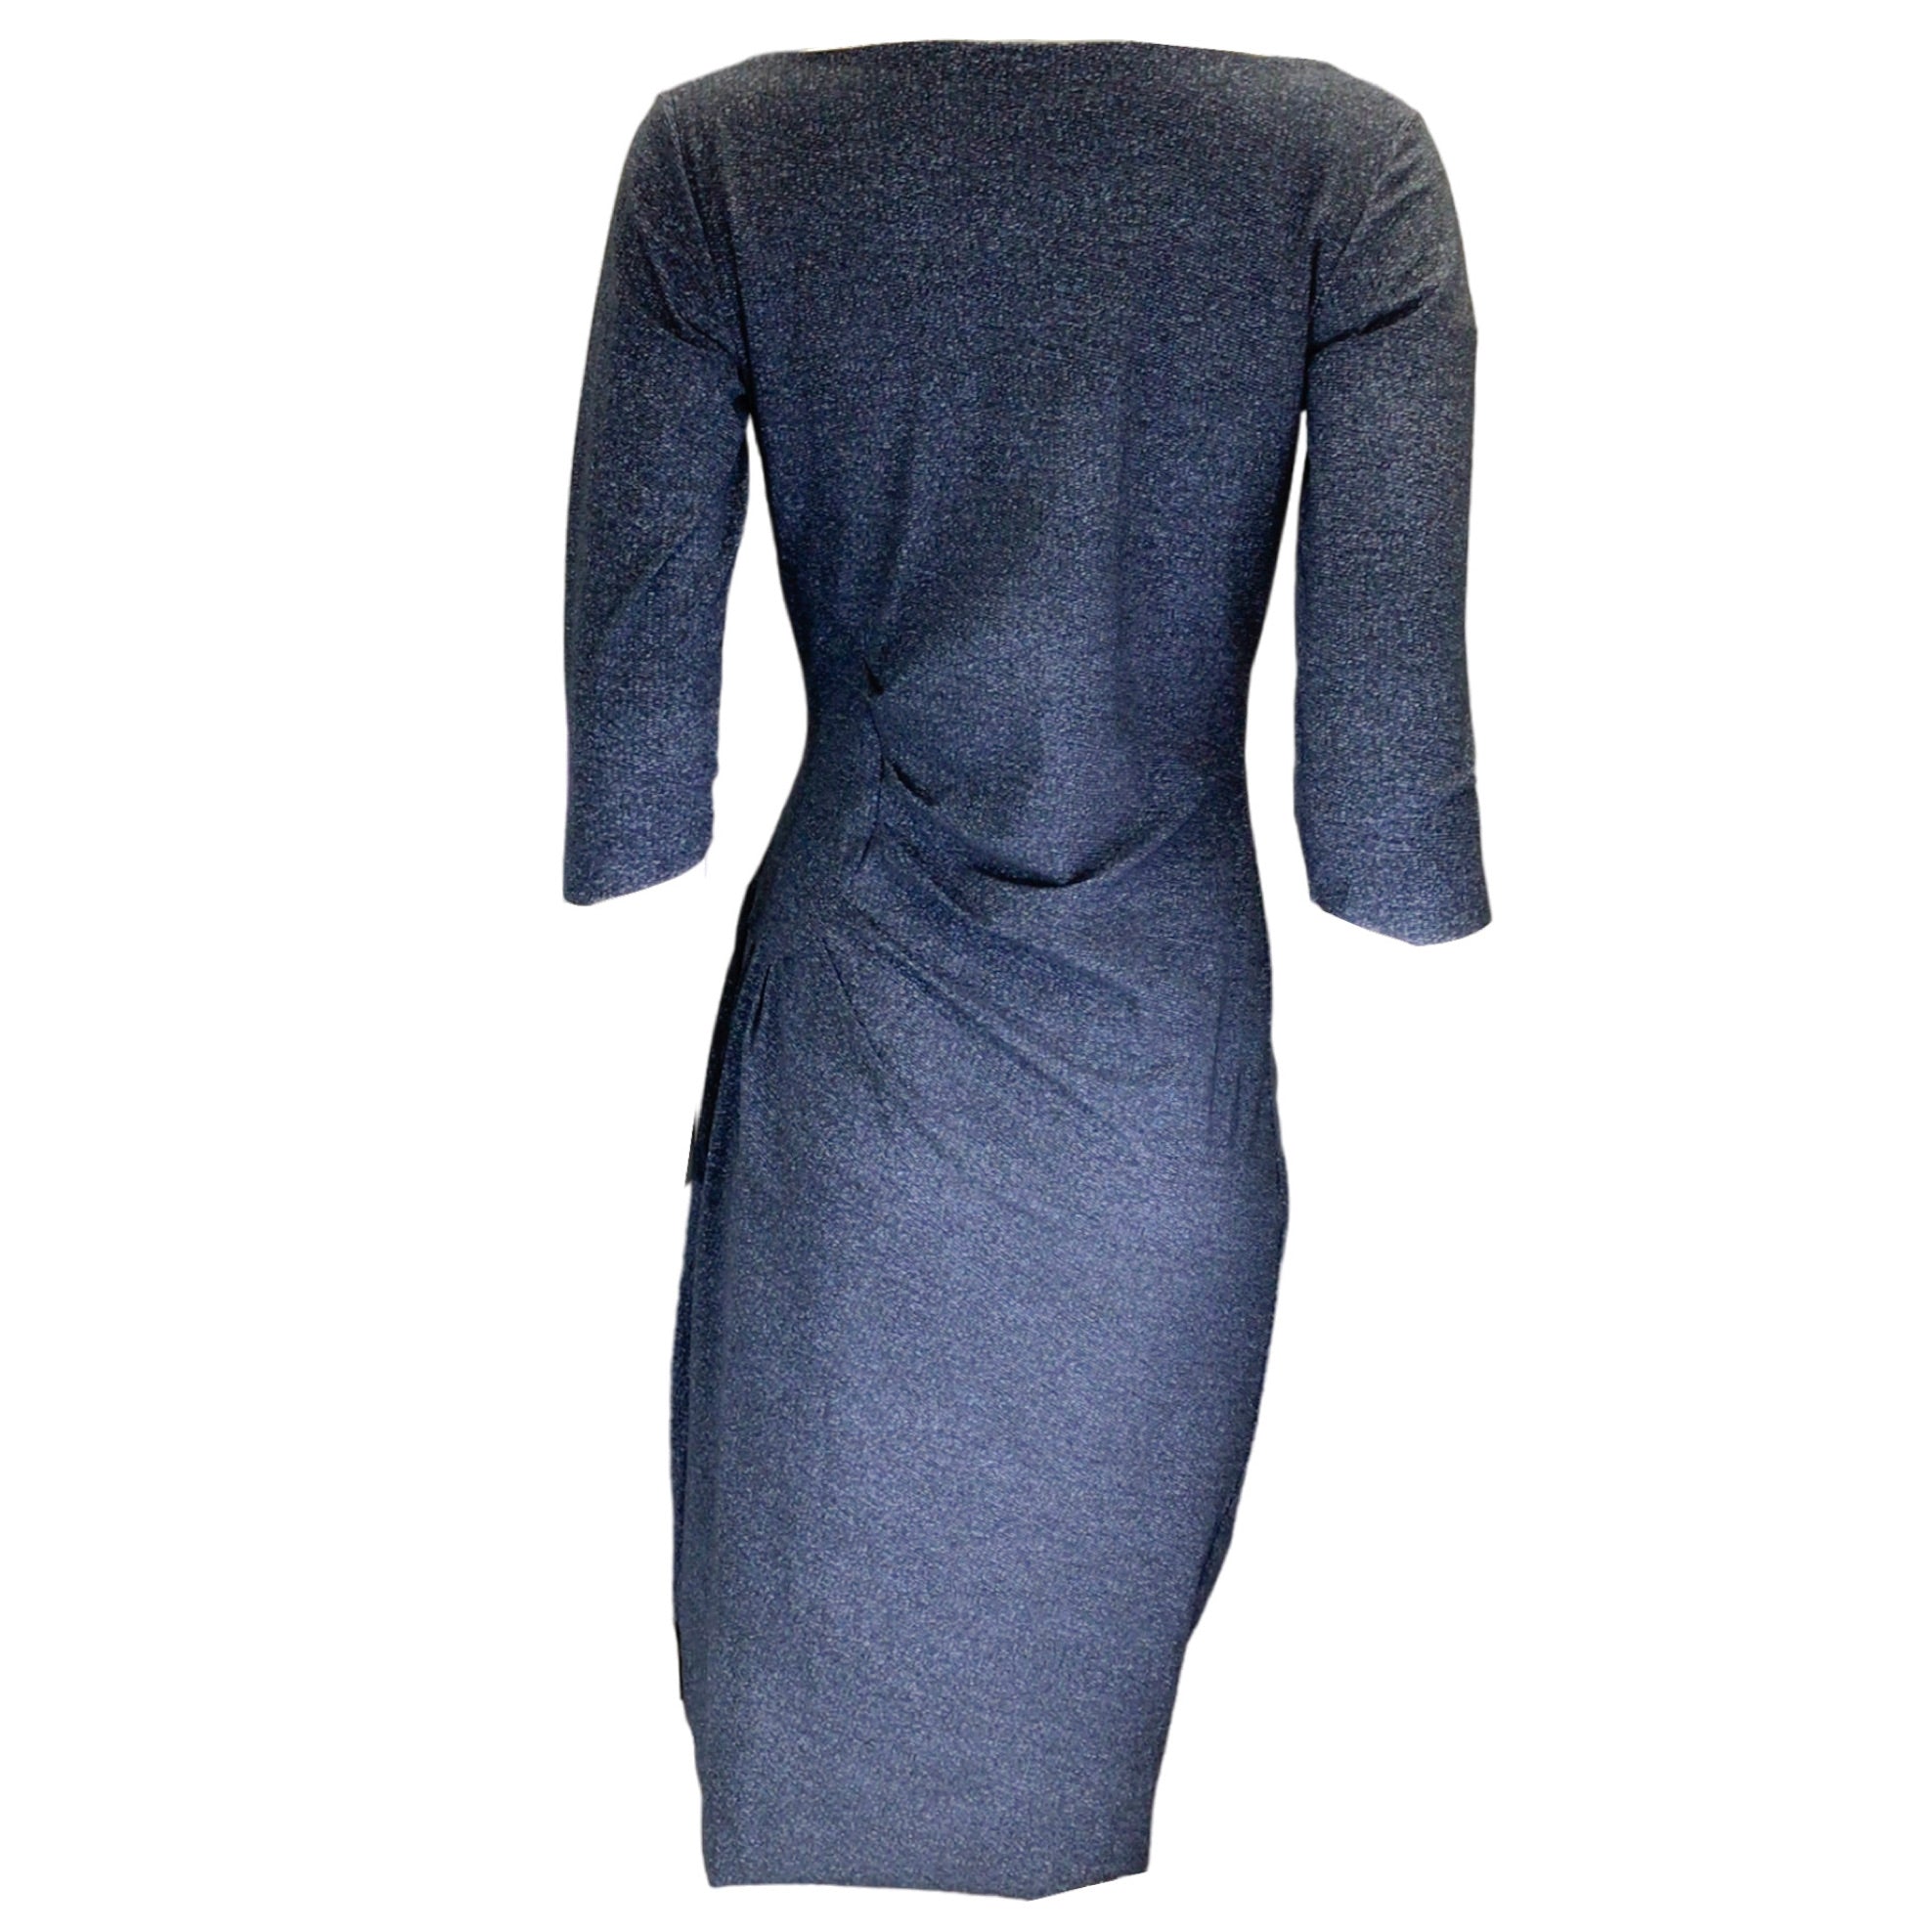 Chiara Boni Blue Multi Francesca Print Ruched Nylon Dress